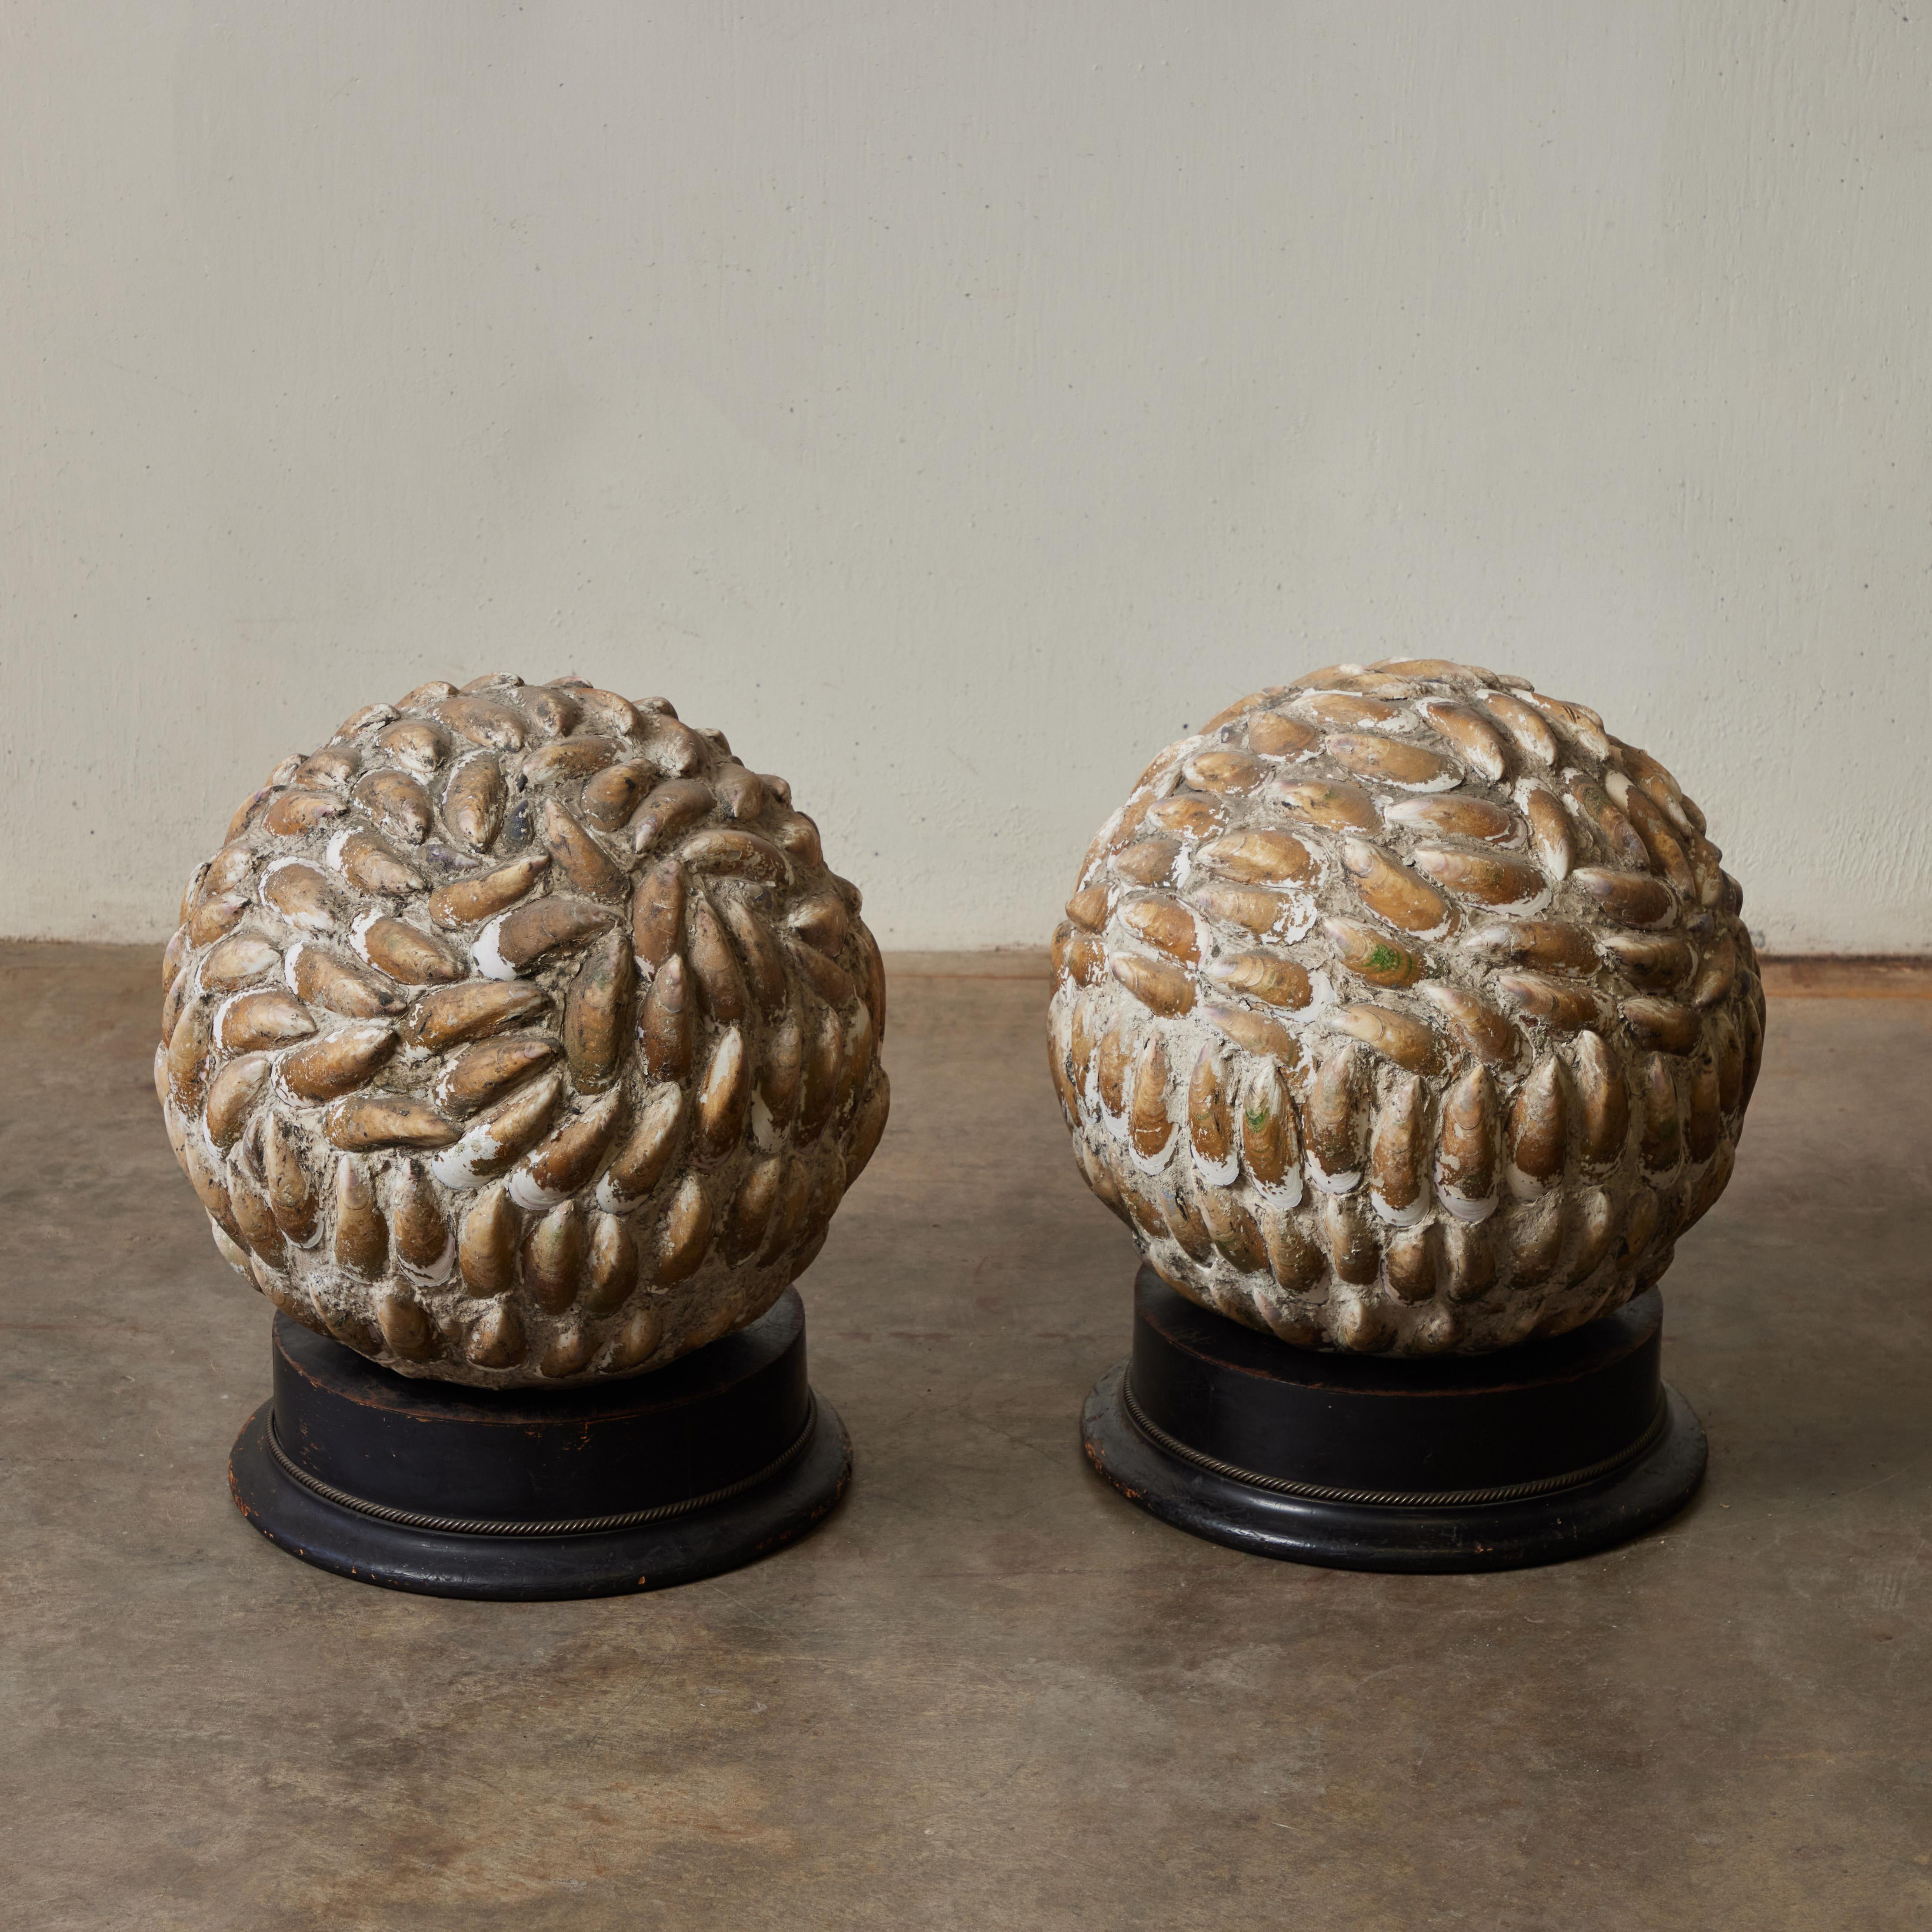 Ein Paar schöner kugelförmiger Skulpturen aus dem England der 1920er Jahre. Das Paar mit dem rhythmischen Muster von Muschelschalen auf runden ebonisierten Sockeln verleiht einem Tisch oder einem Regal einen naturalistischen Touch. 

England um